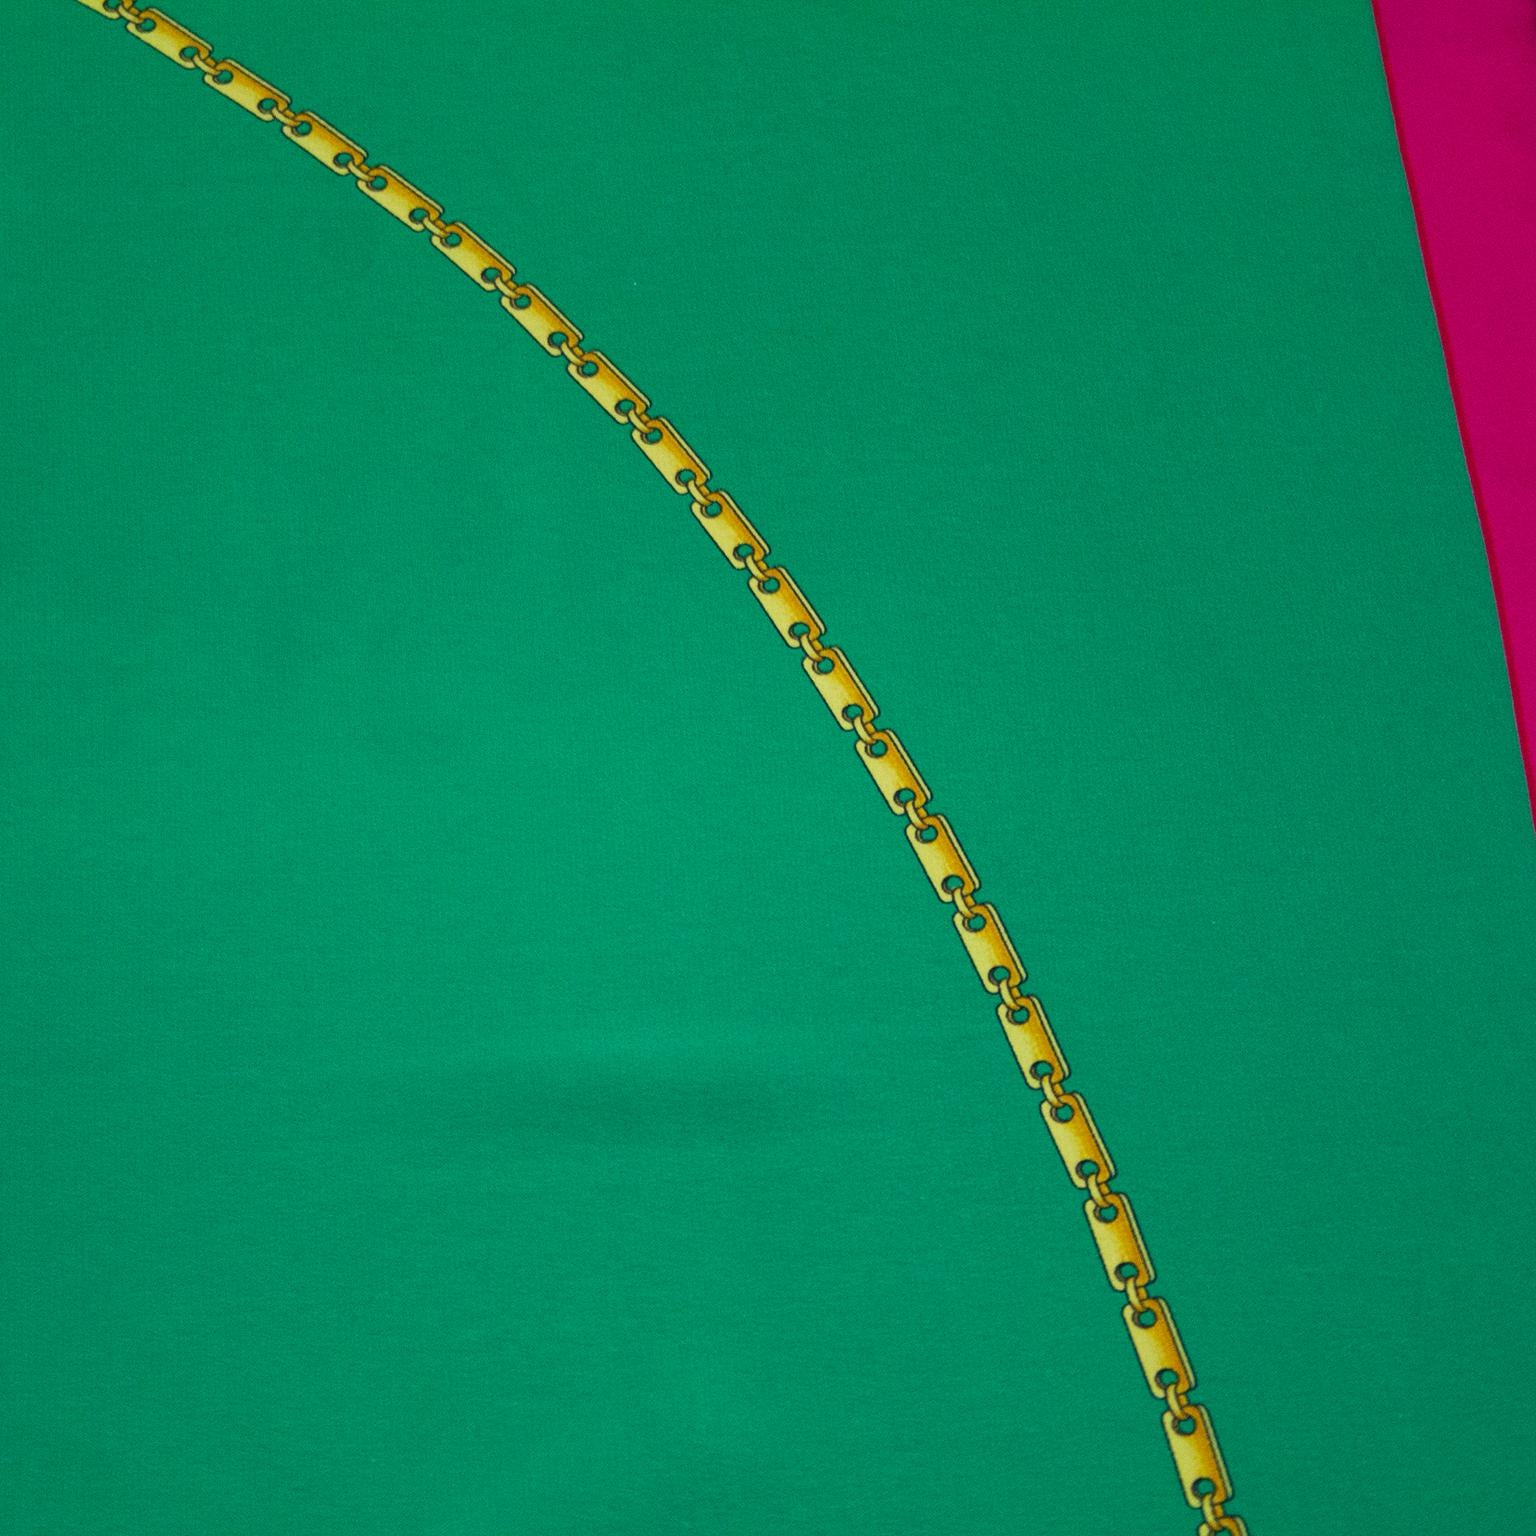 Quadratischer Seidenschal von Cartier aus den frühen 2000er Jahren. Grün mit magentafarbener Umrandung und Cartier-Logo. Goldgliederschmuck Detail. Cartier-Markierungen. Handgenähter Rollsaum. Ausgezeichneter Vintage-Zustand. 32